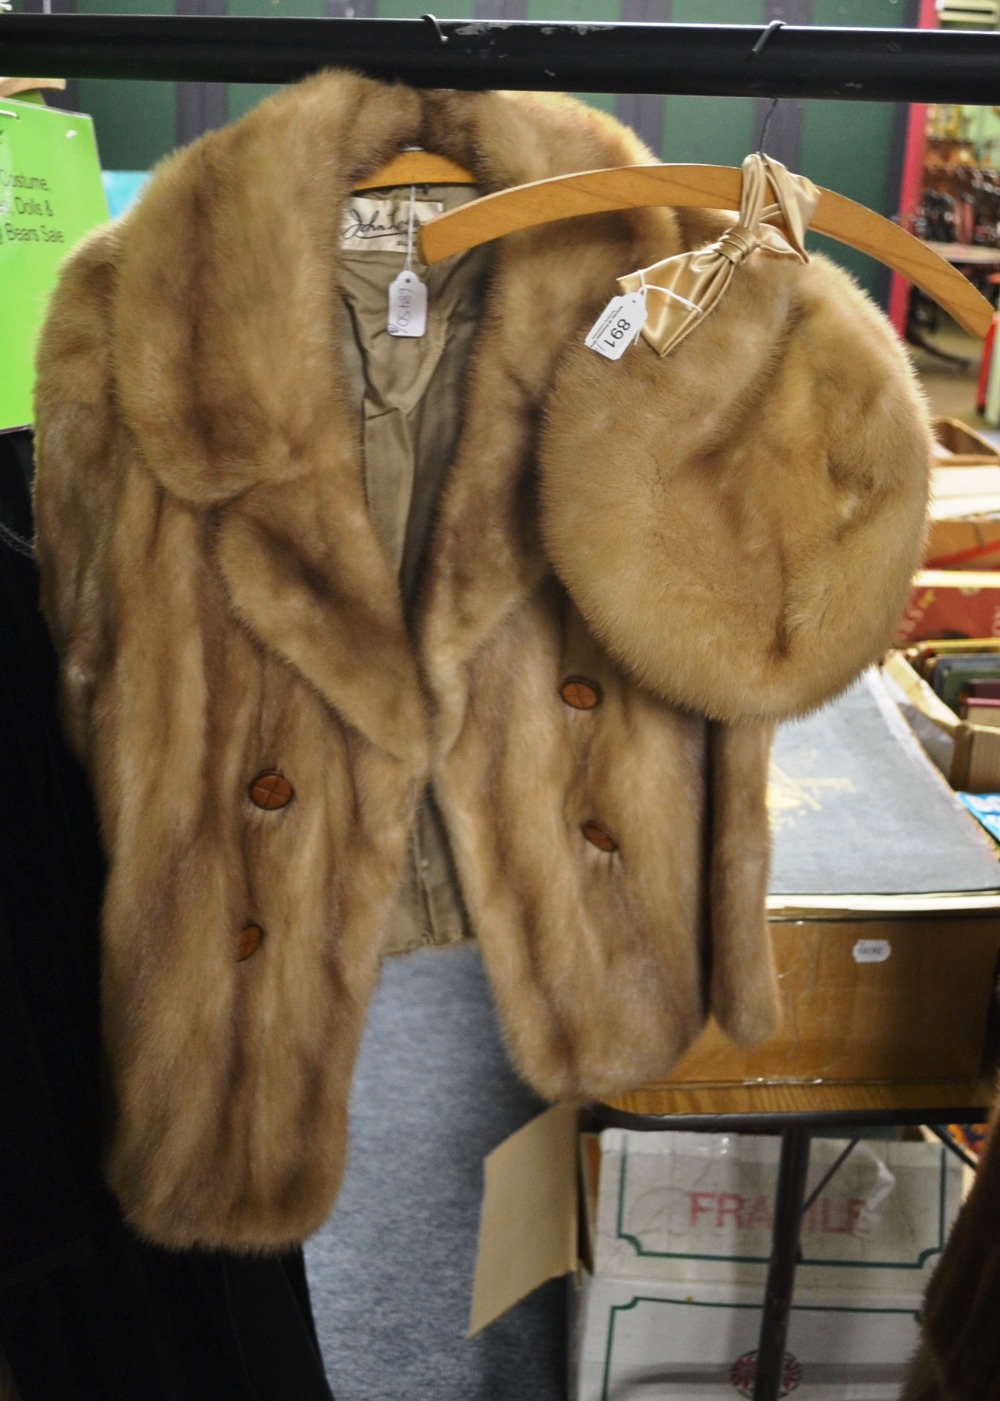 A light mink fur jacket and hat